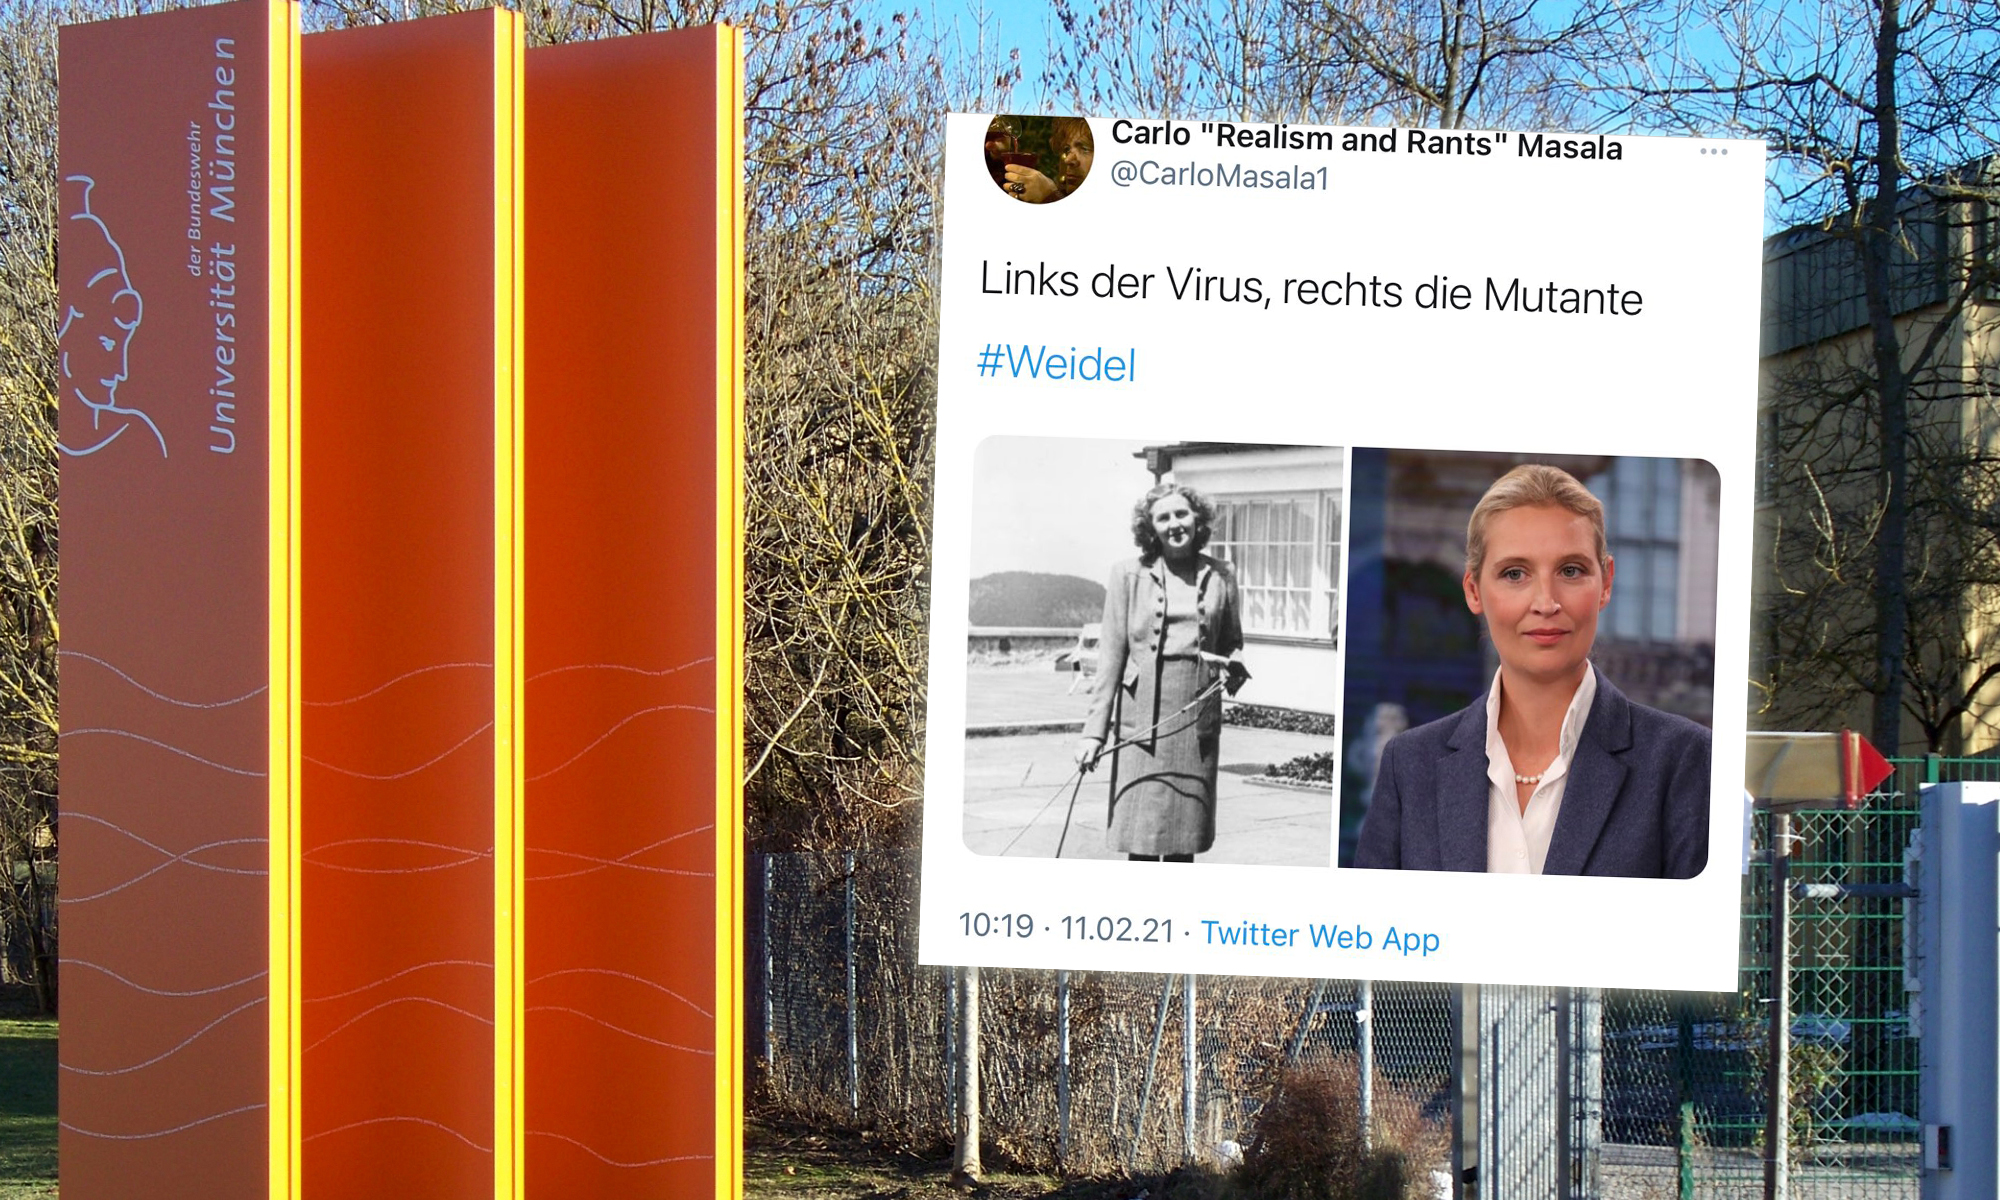 Bundeswehr-Universität München, Tweet von Carlo Masala